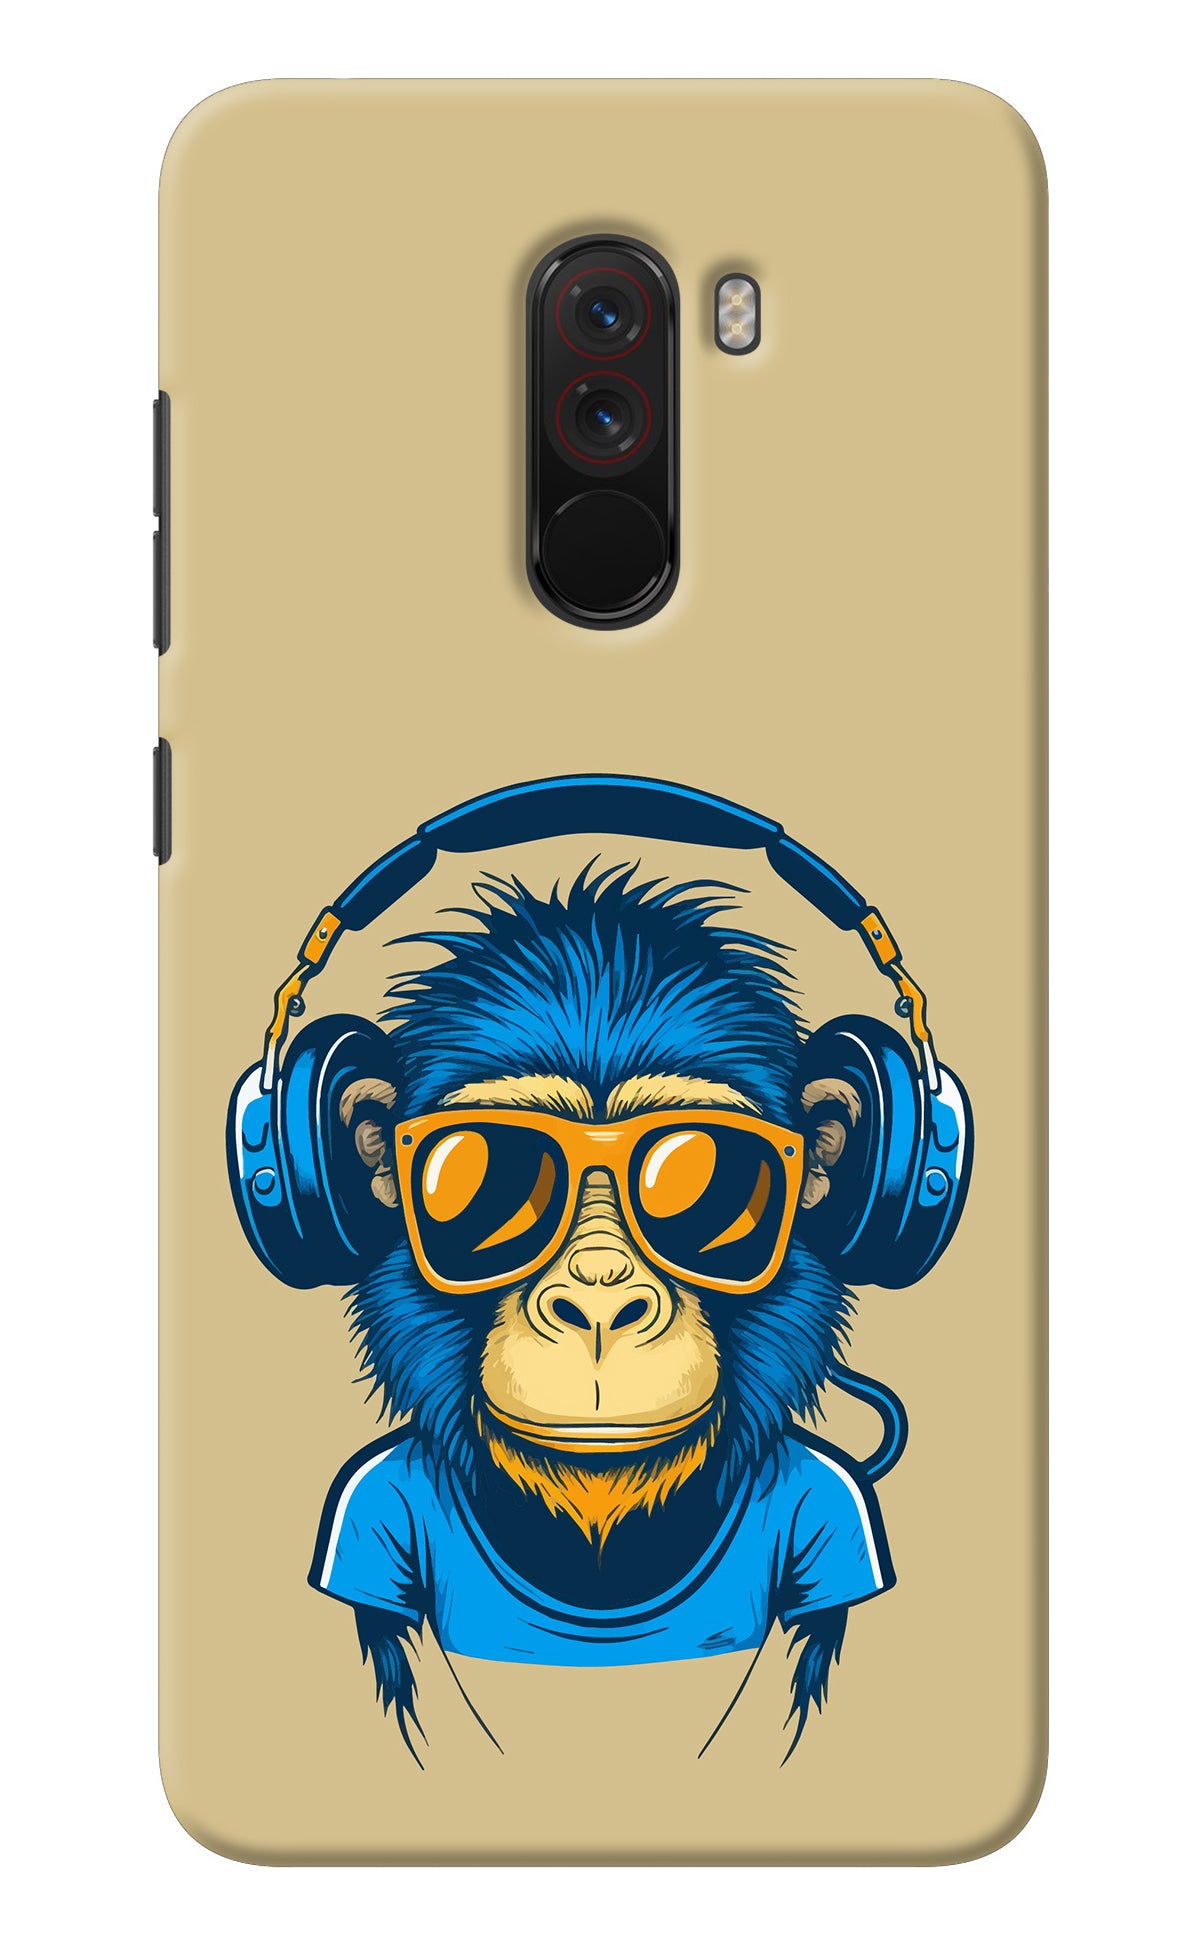 Monkey Headphone Poco F1 Back Cover